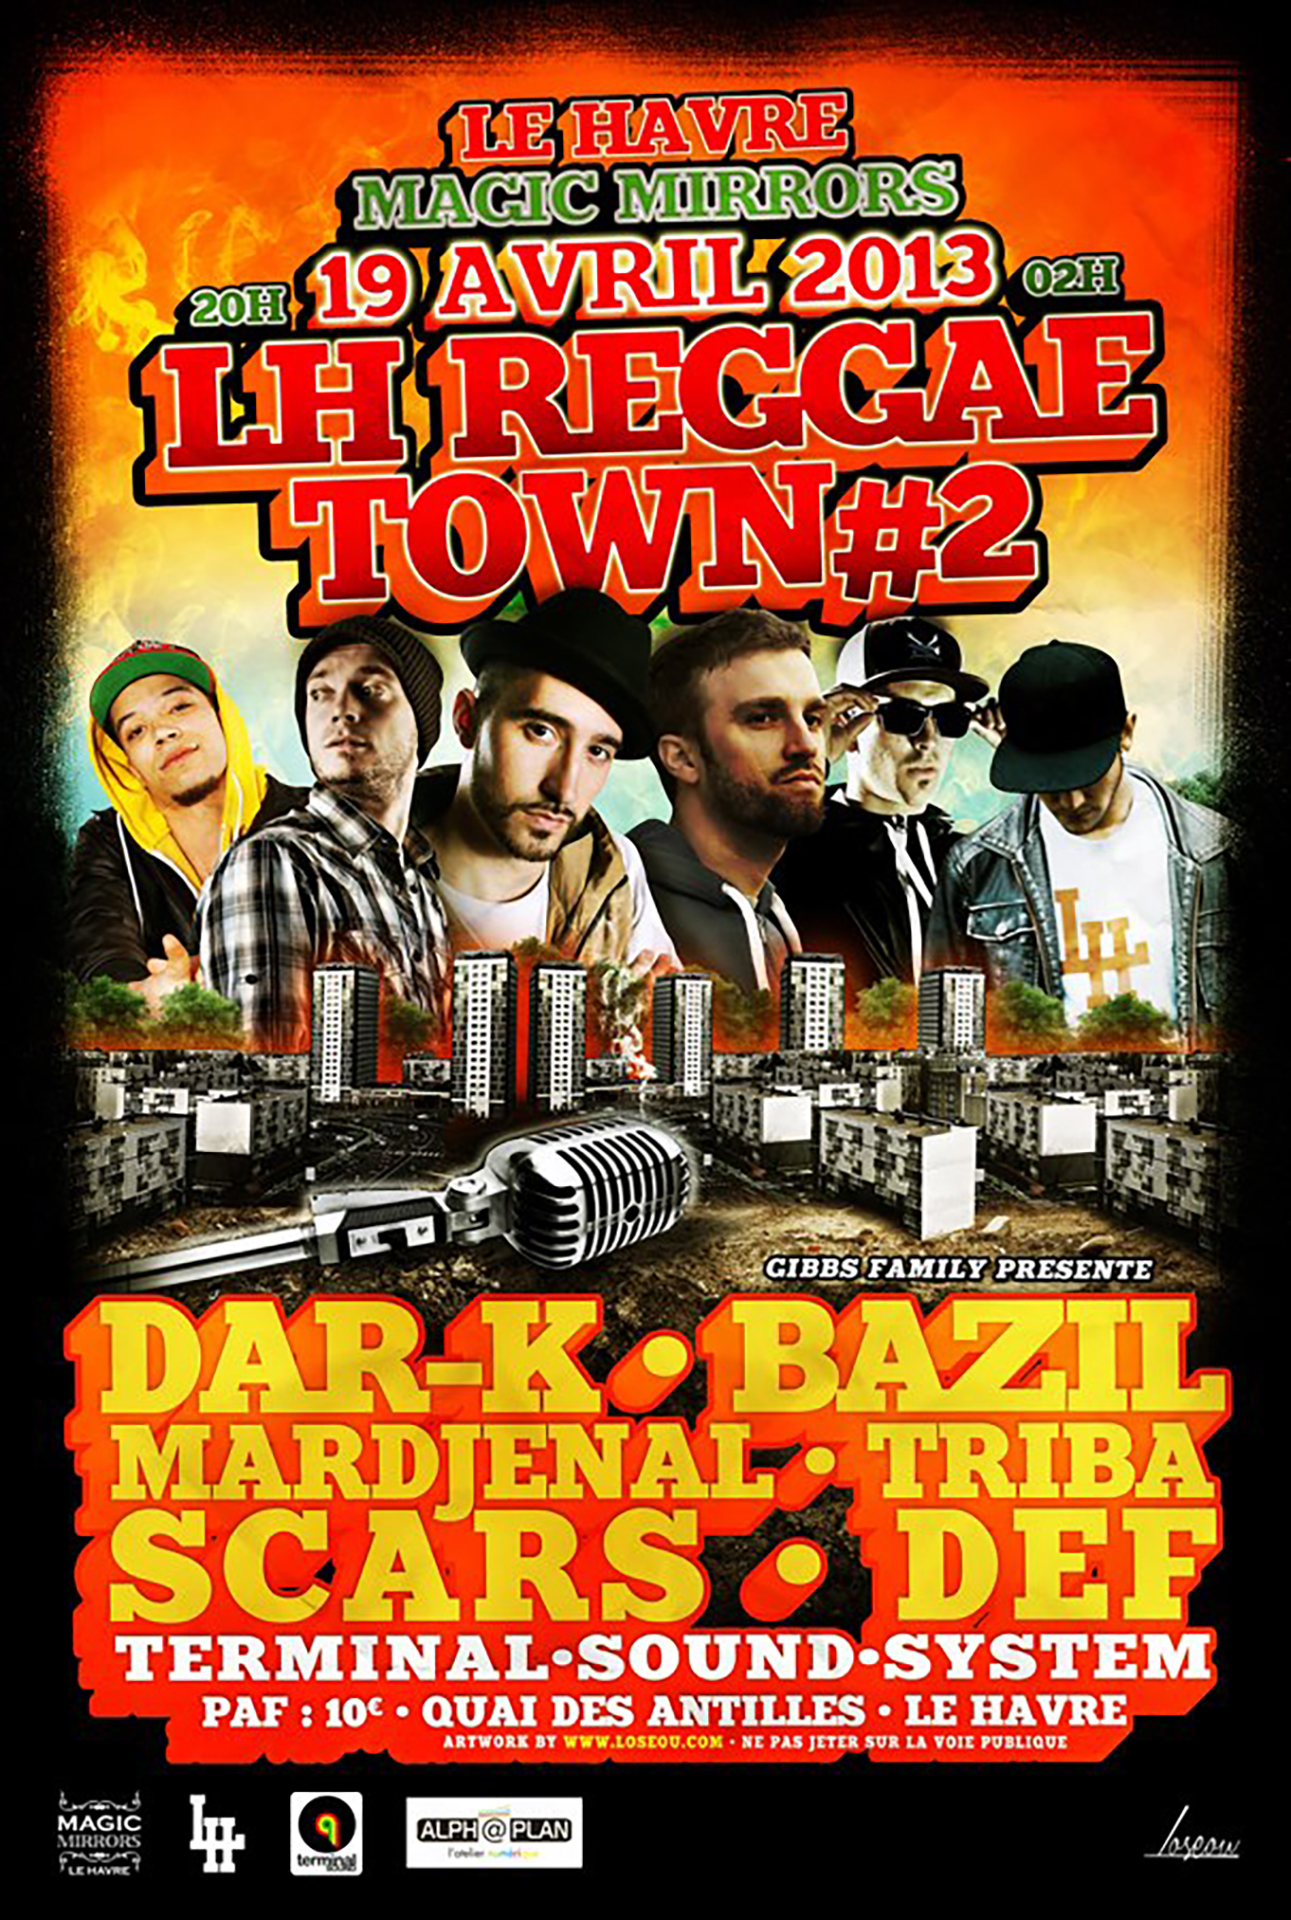 Poster et visuels réseaux sociaux pour le LH Reggae Town 2eme Edition. Réalisé par Loseou